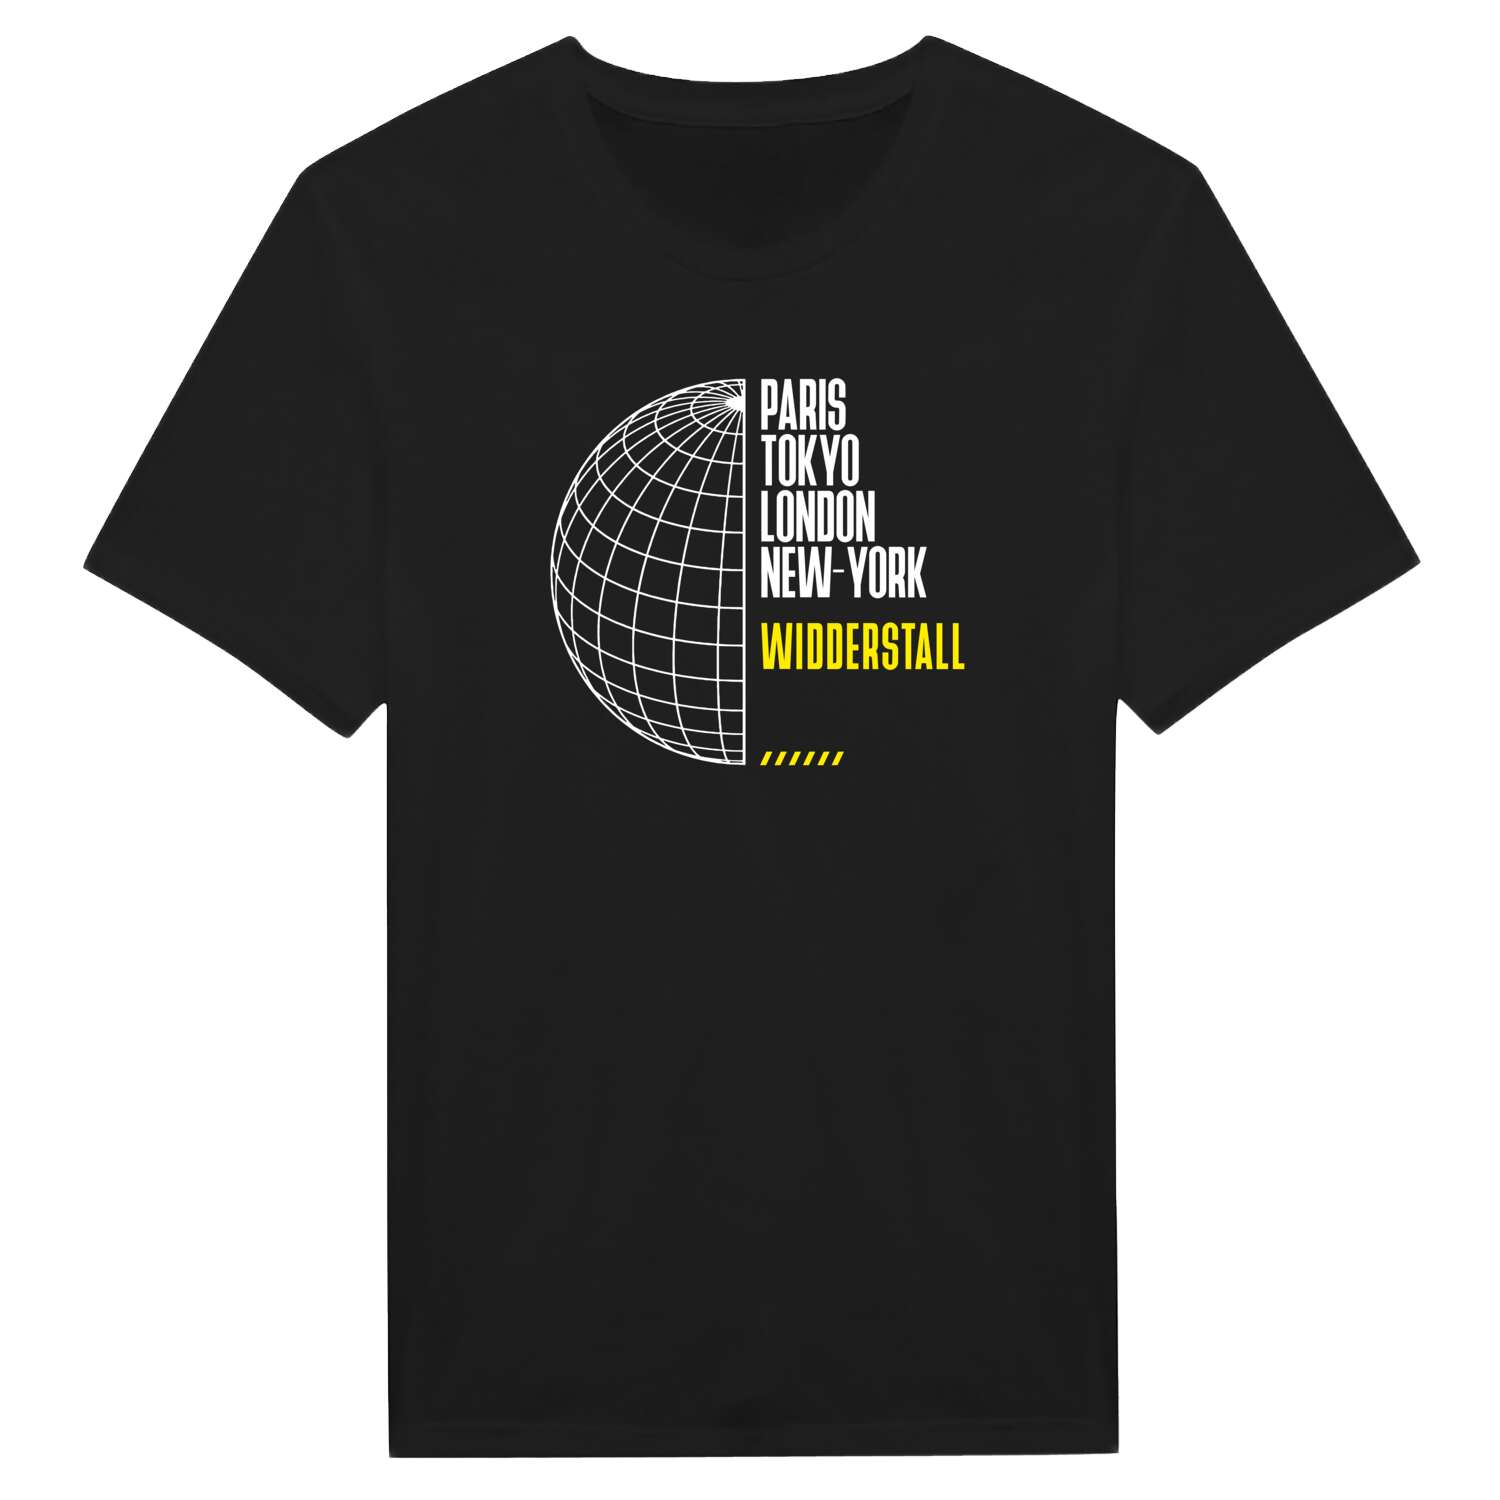 Widderstall T-Shirt »Paris Tokyo London«